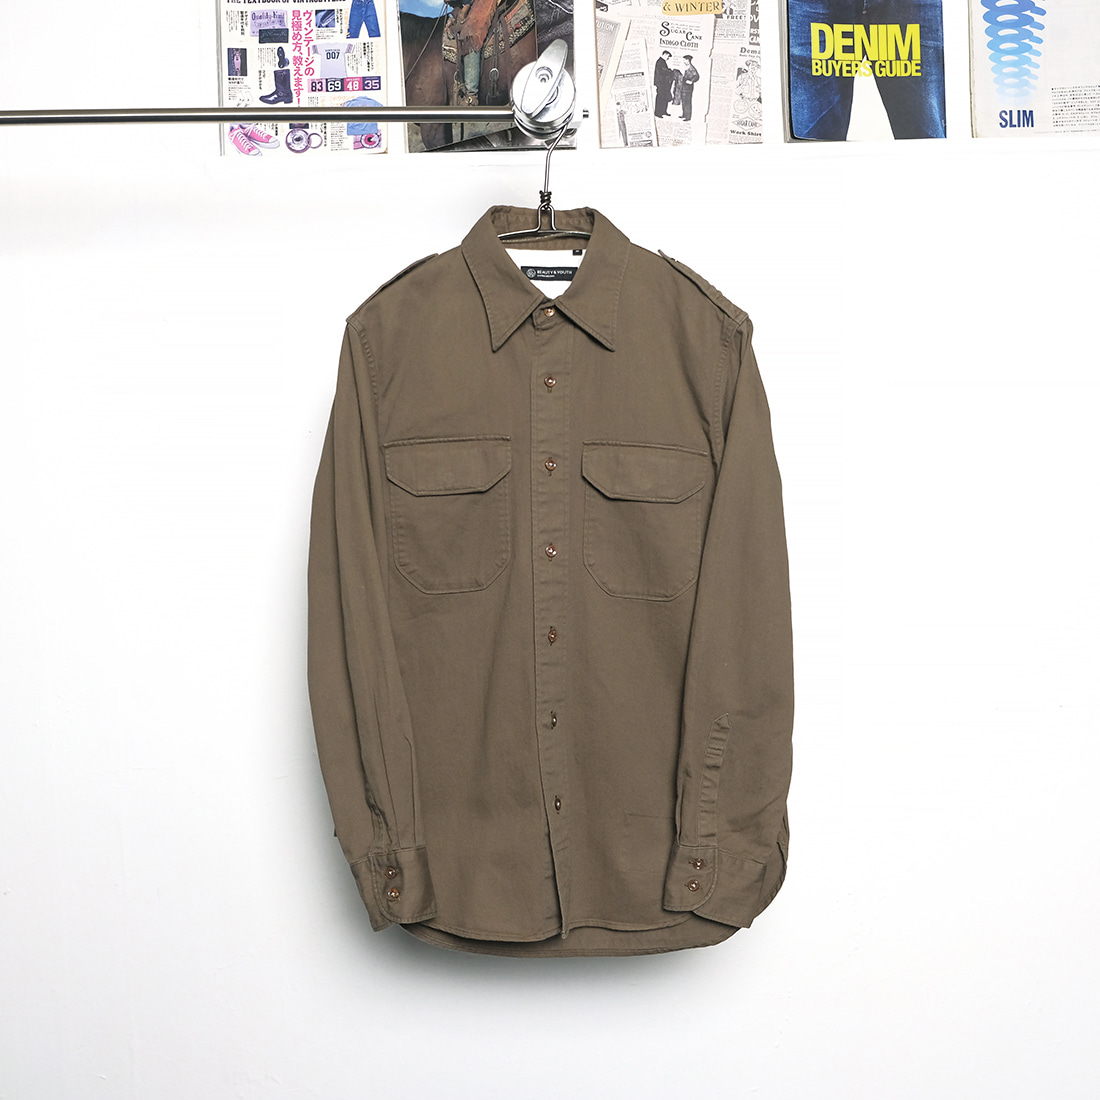 유나이티드 애로우즈 / Made in japan  B&amp;Y united arrows linen mix combat style shirt